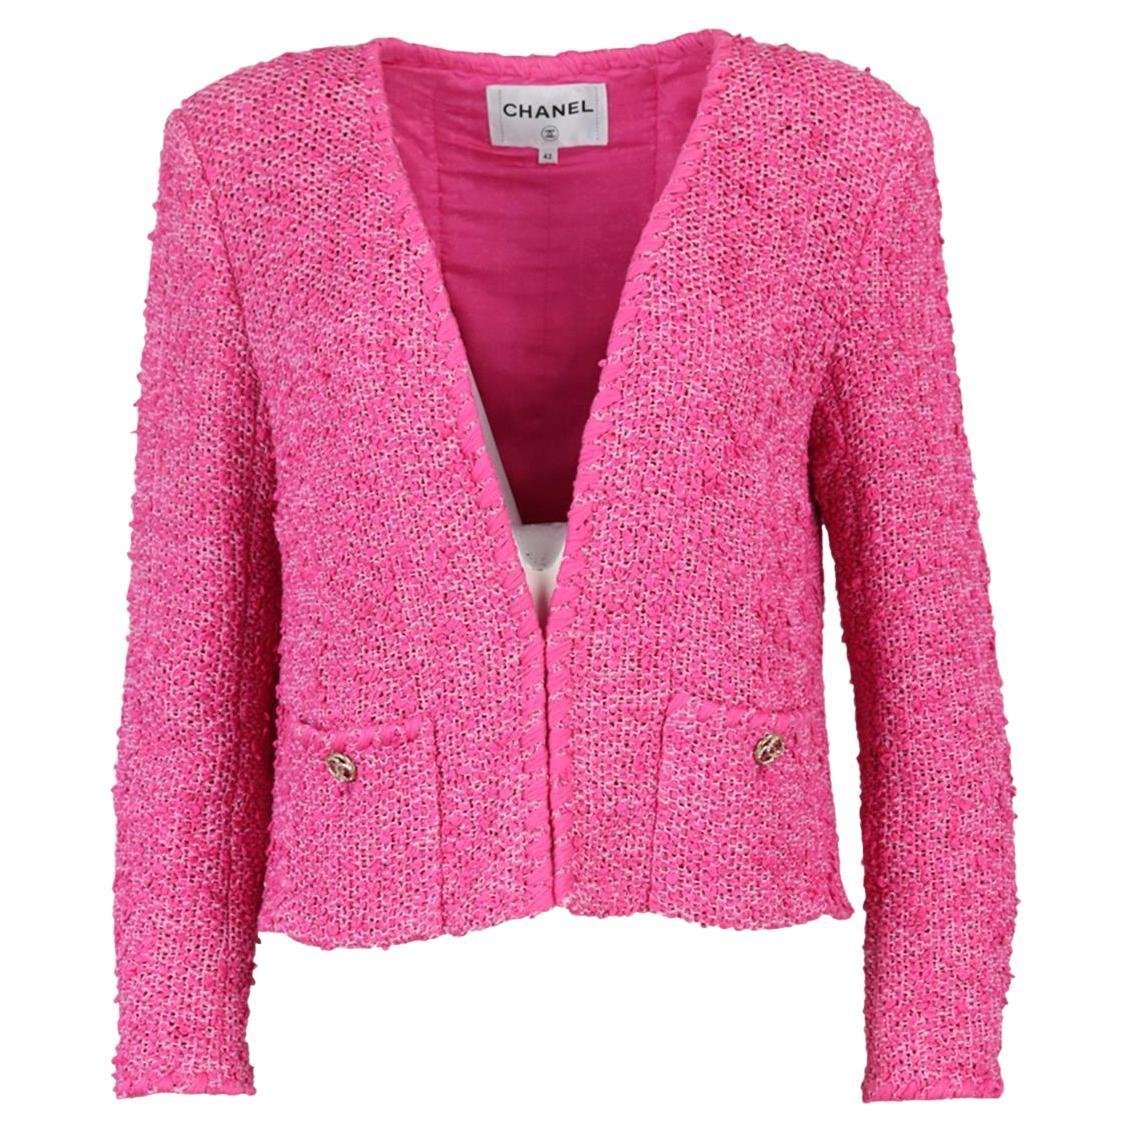 Chanel 2021 Cotton Blend Tweed Jacket Fr 42 Uk 14